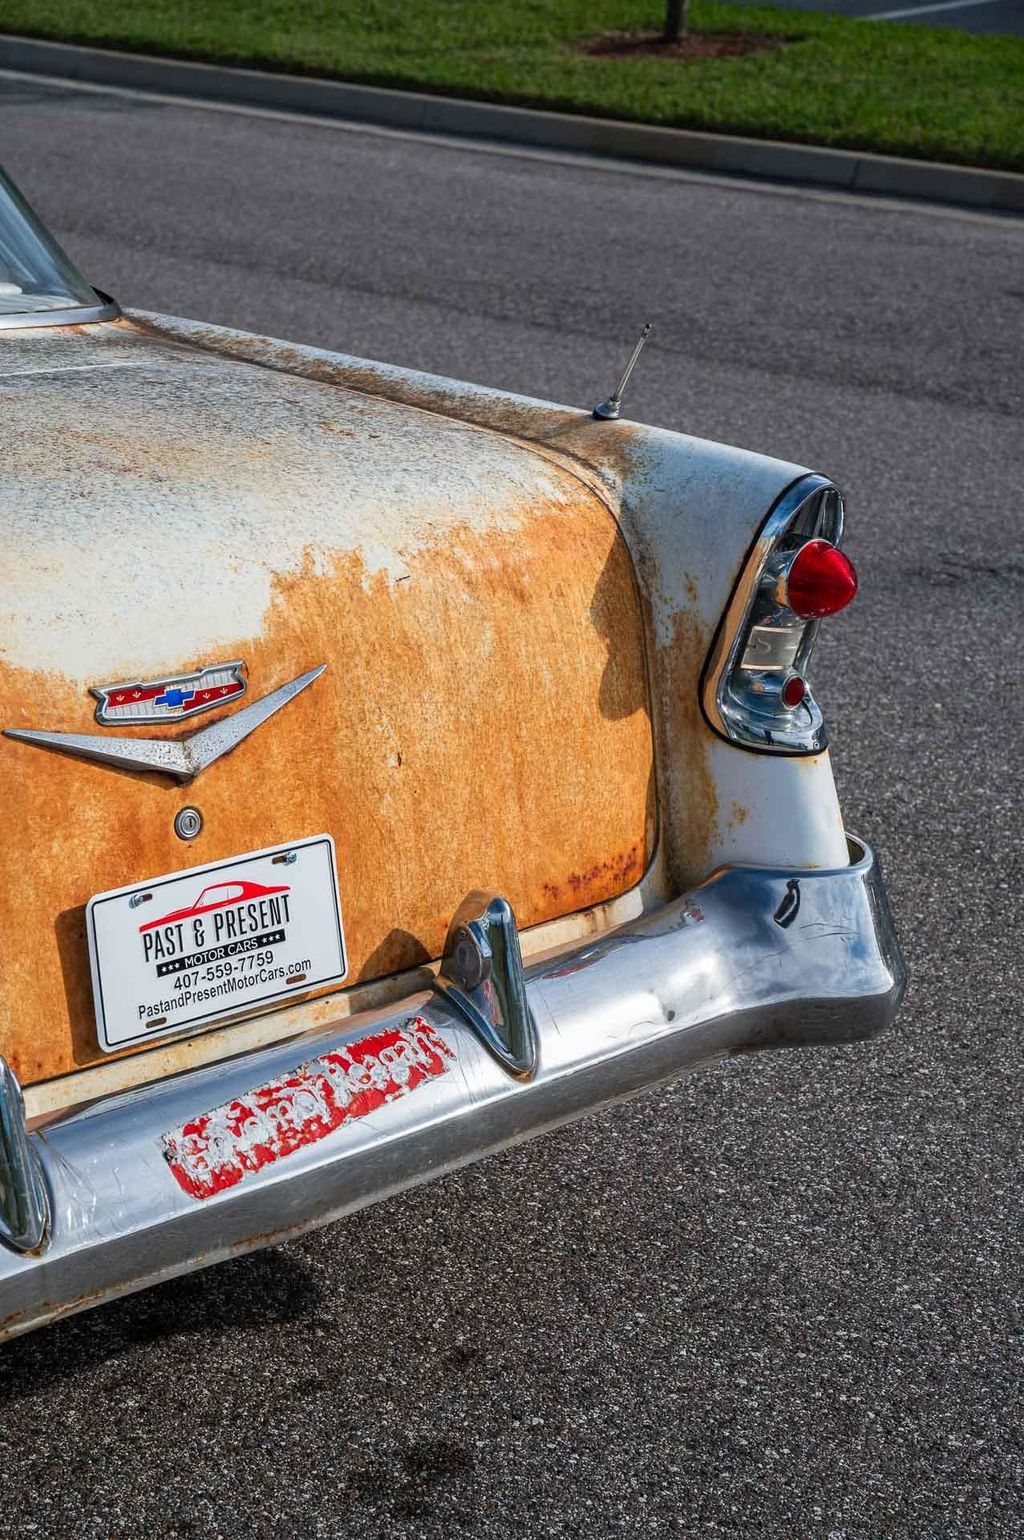 1956 Chevrolet Bel Air 2 Door Hardtop Sport Coupe Survivor - 22241138 - 36